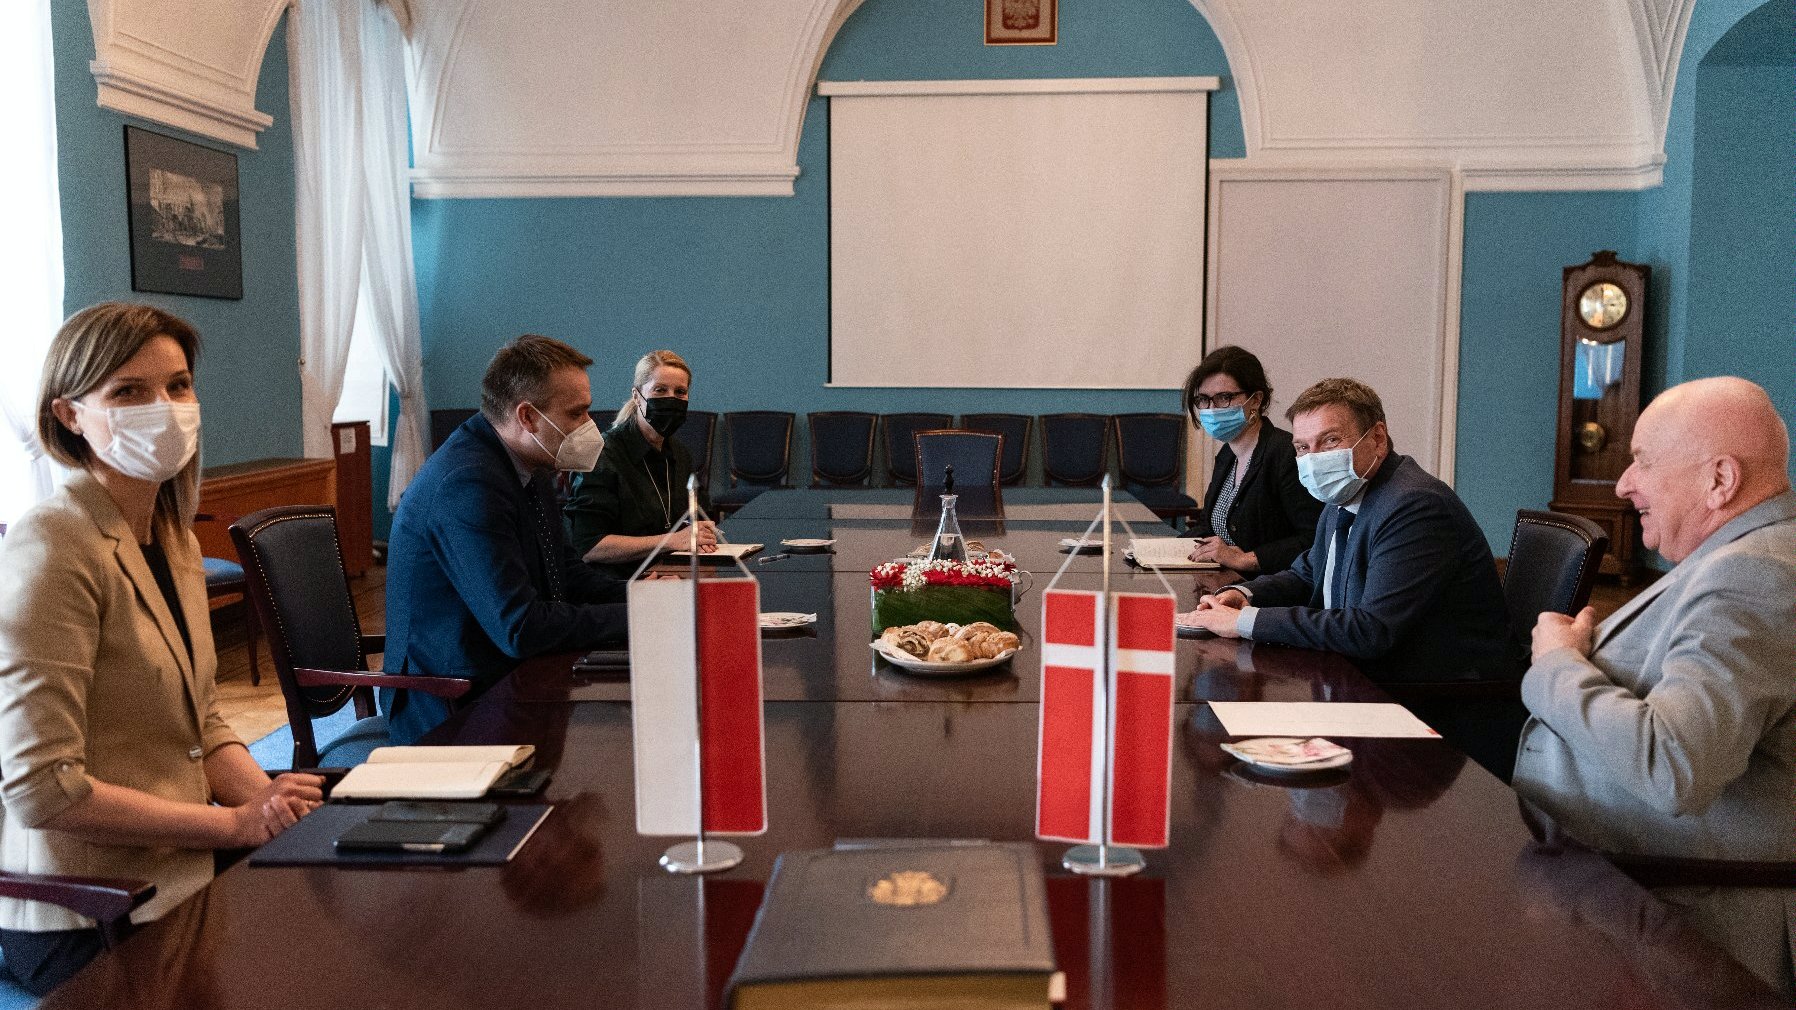 spotkanie dyplomatyczne w Sali Niebieskiej, na stole flaga polska i duńska, prawie wszystkie osoby w maseczkach na twarzy